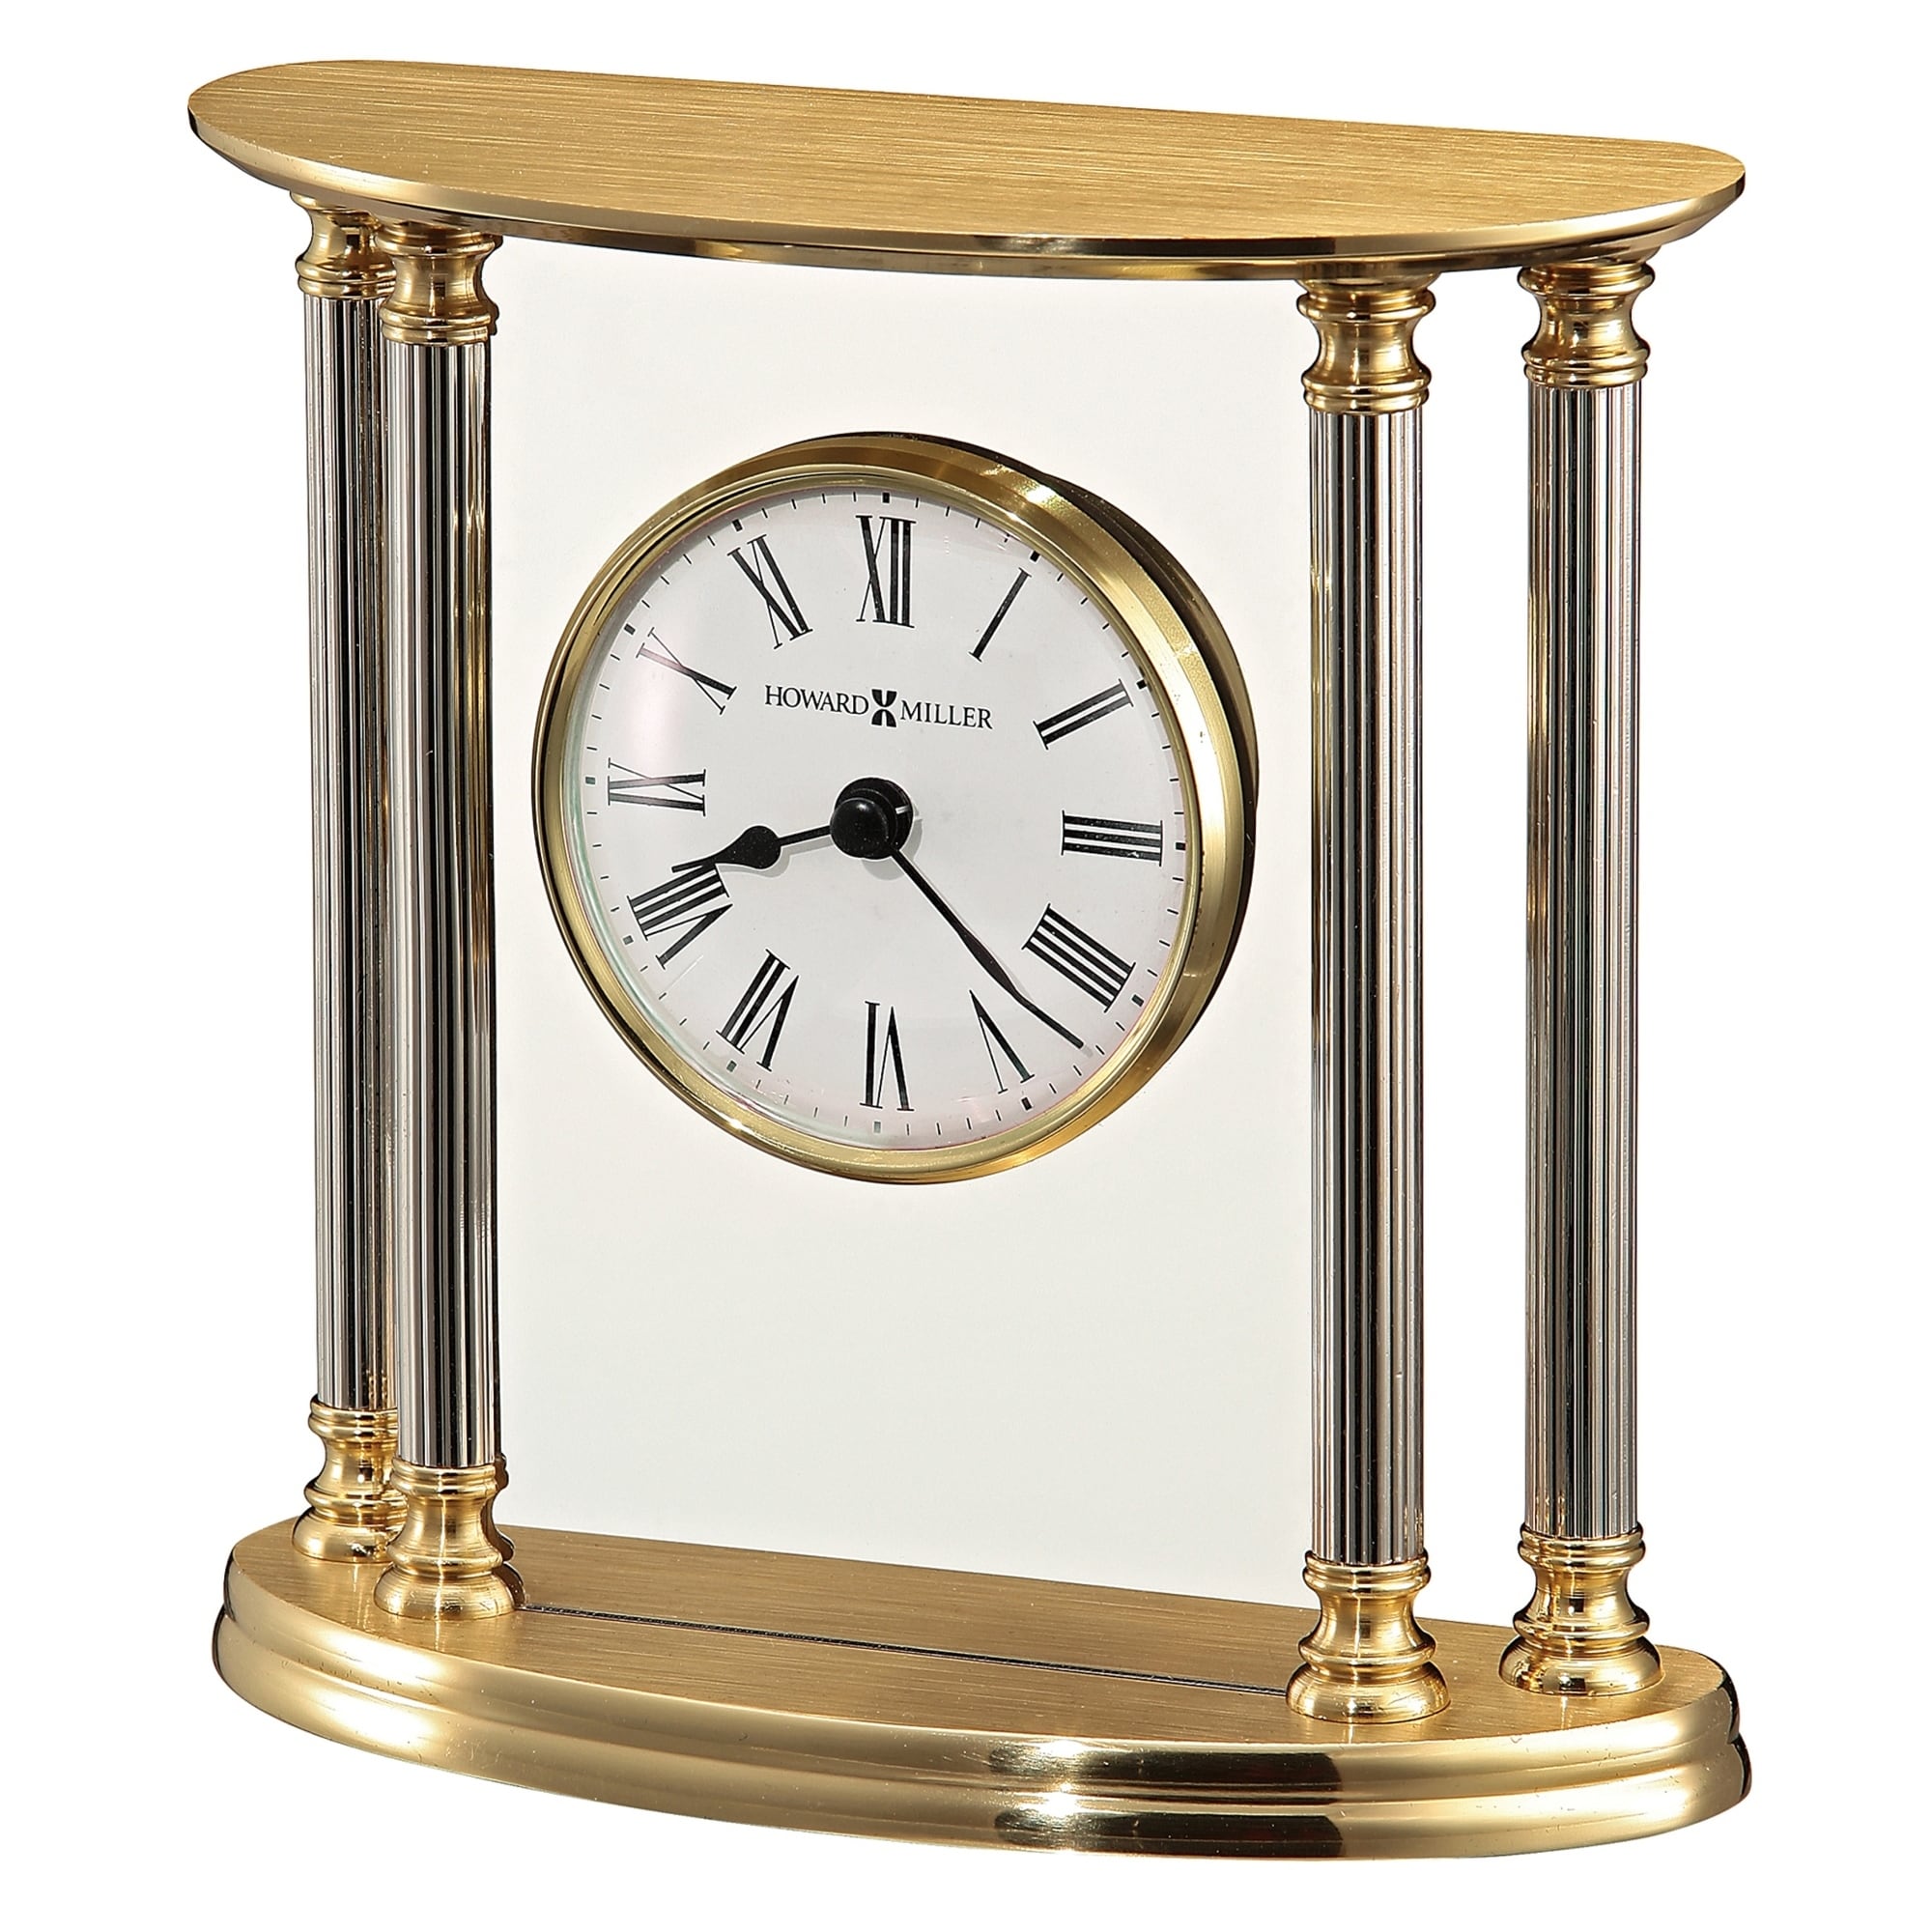 Featured image of post Howard Miller Desk Clock Vintage - A george nelson for howard miller brass desk clock.